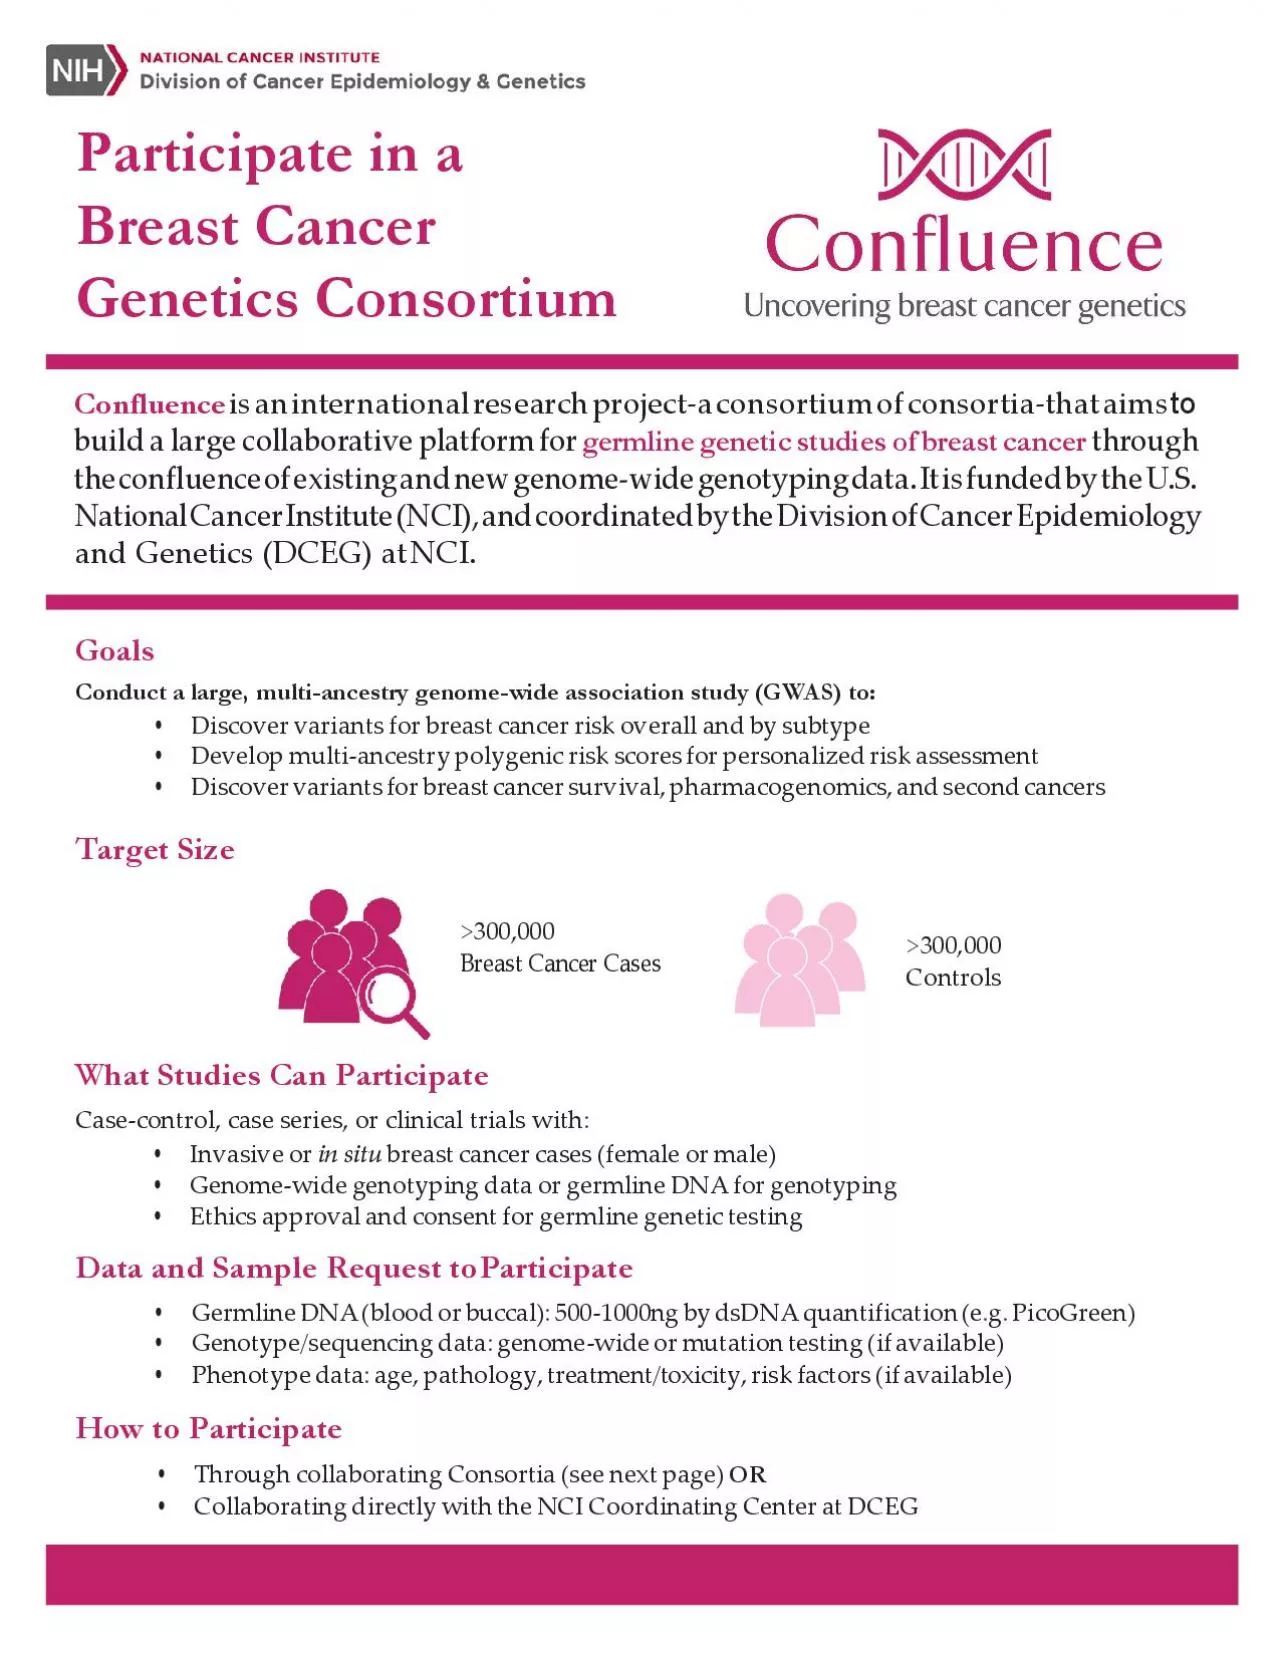 Participate in a Breast Cancer Genetics Consortium